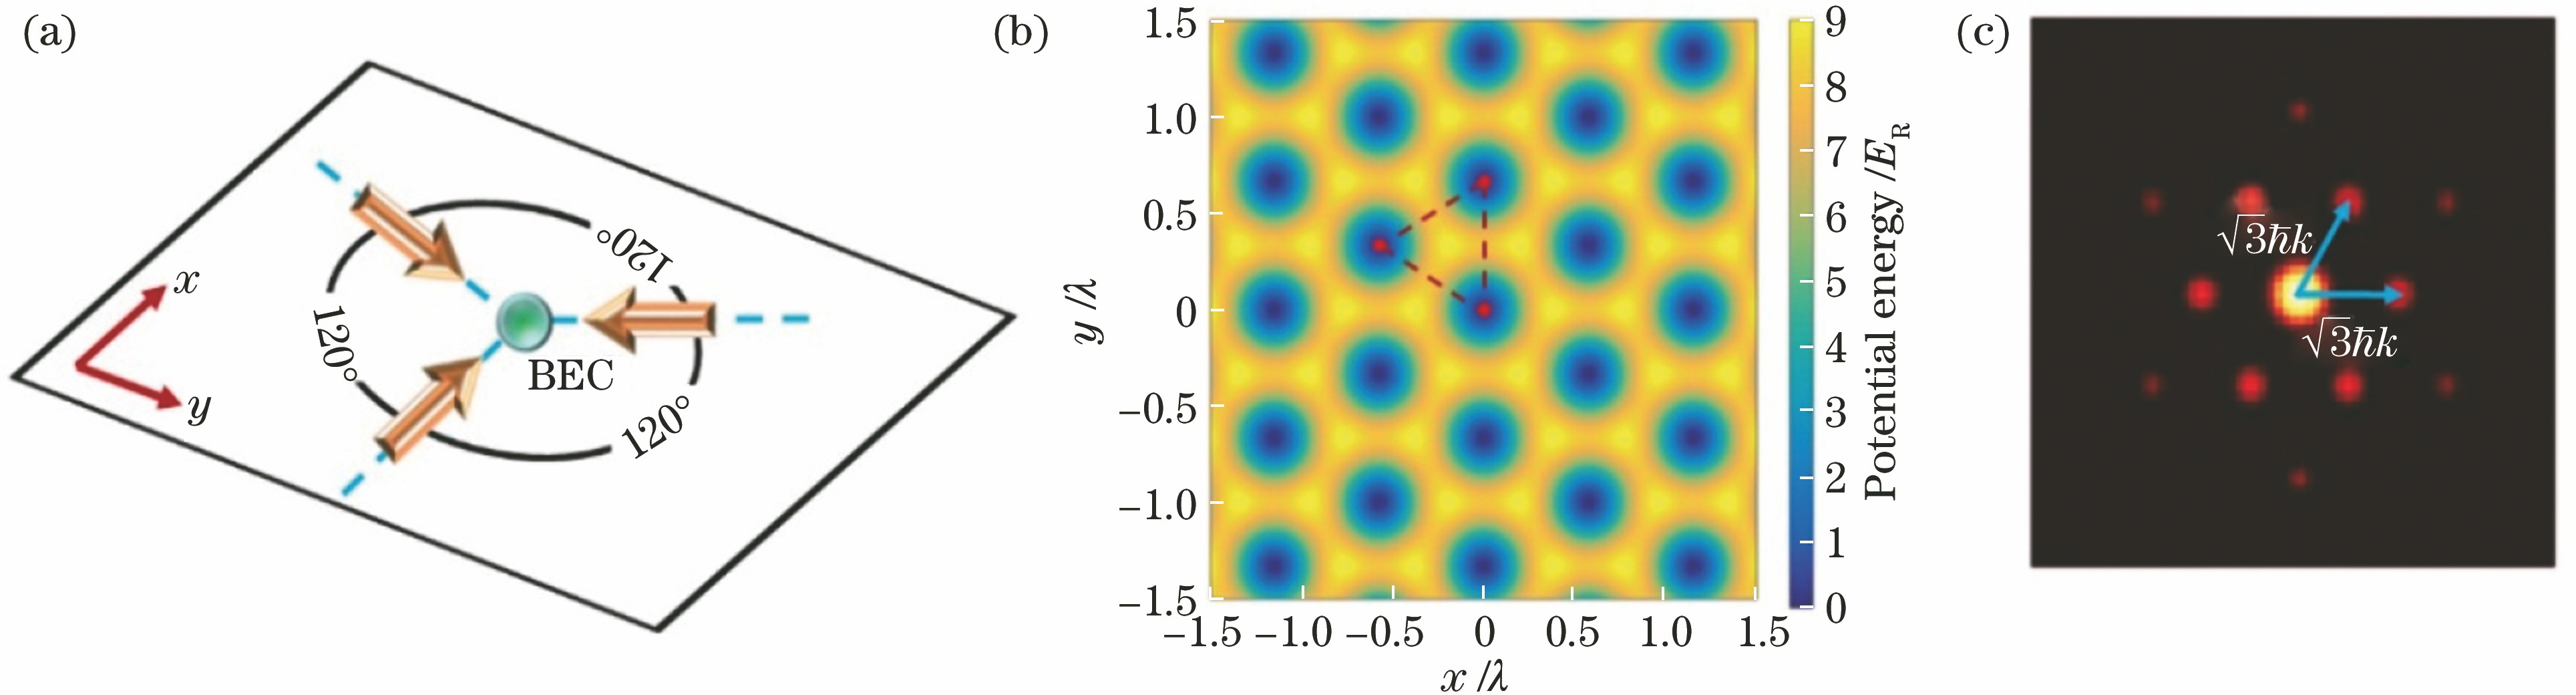 Triangular lattice. (a) Schematic of lattice optical path; (b) potential energy of lattice; (c) atomic momentum distribution in lattice